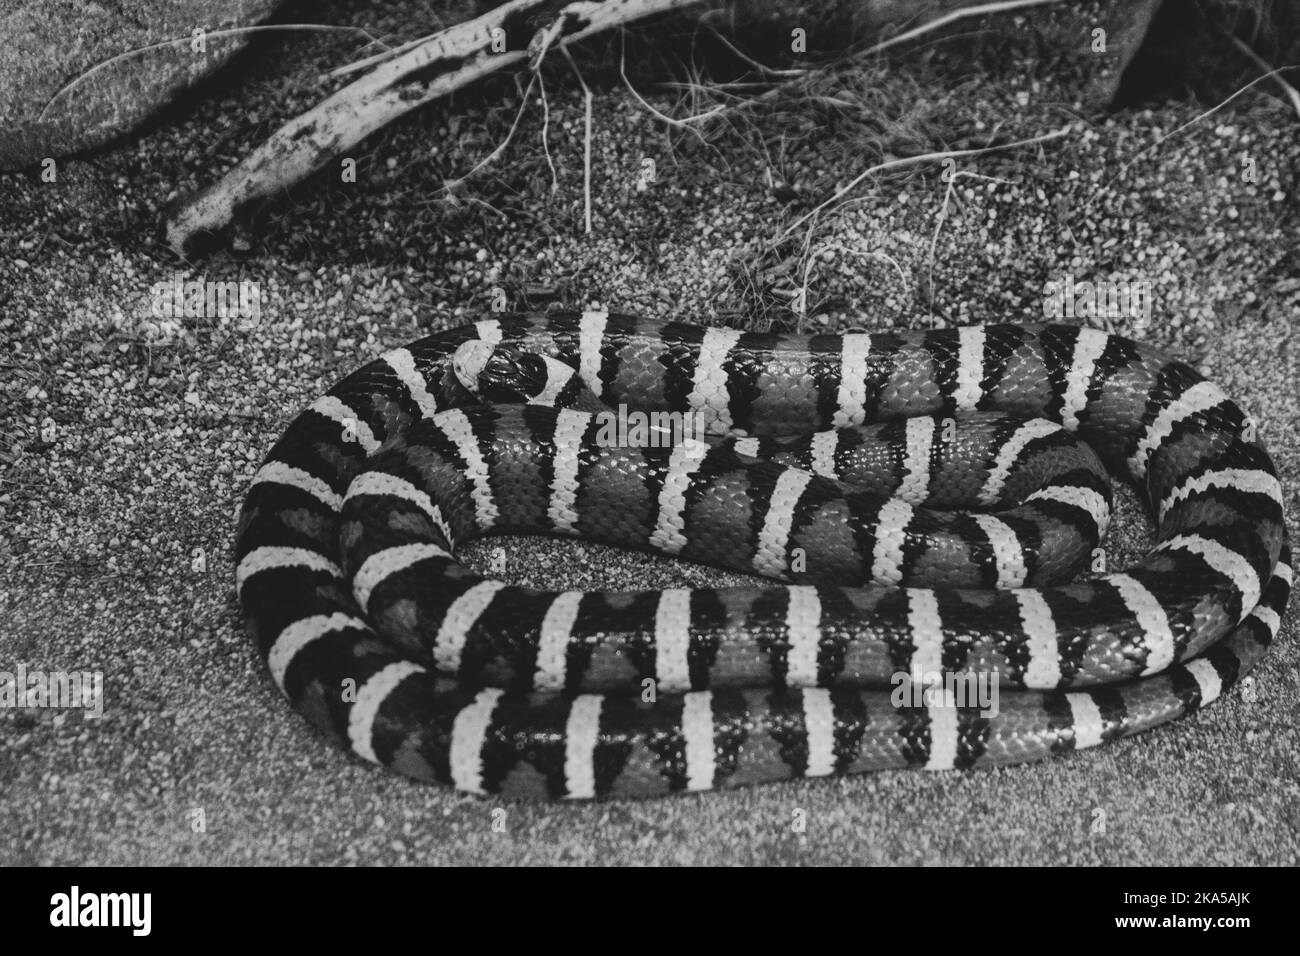 Un serpent roi de montagne de Sonora enroulé autour de lui-même dans une enceinte. L'image est en noir et blanc pour mettre en évidence les bandes de couleur. Banque D'Images